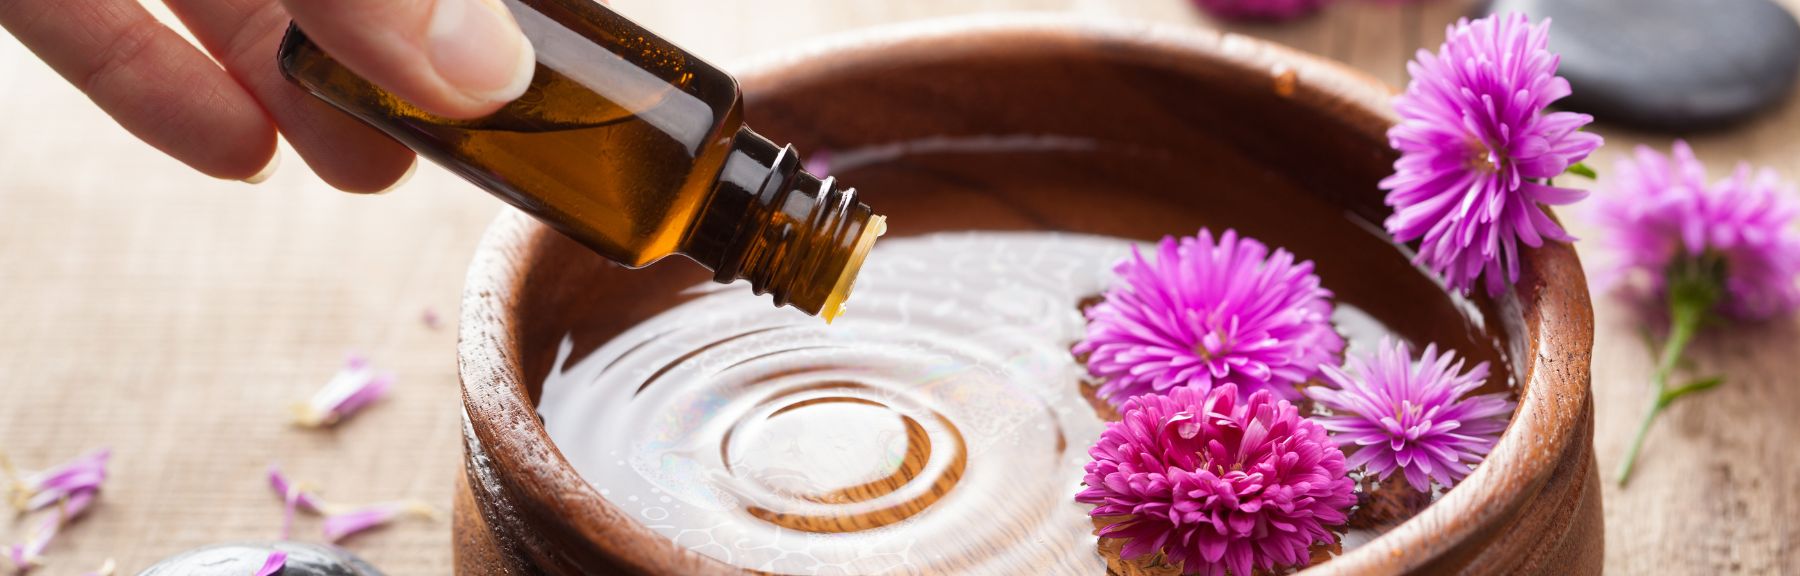 Conoce los beneficios de la aromaterapia y lo que puede hacer por ti